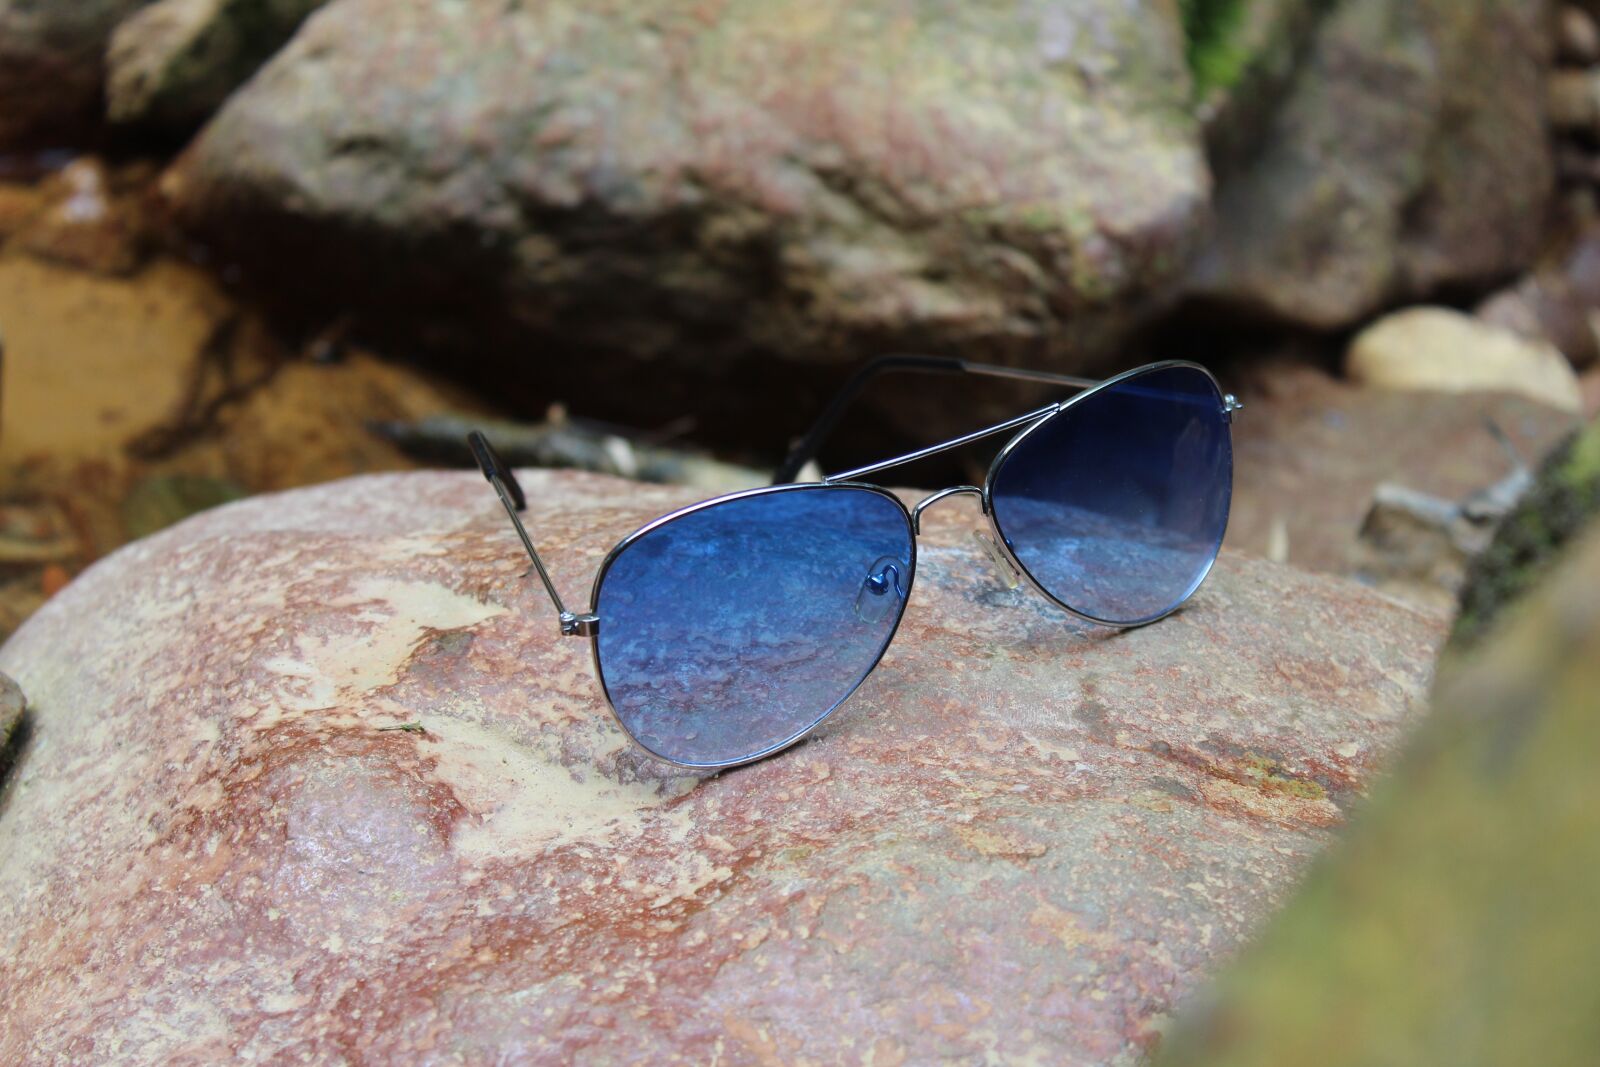 Солнцезащитные очки на природе. Каменные очки. Камень с очками. Солнцезащитные очки на камнях.